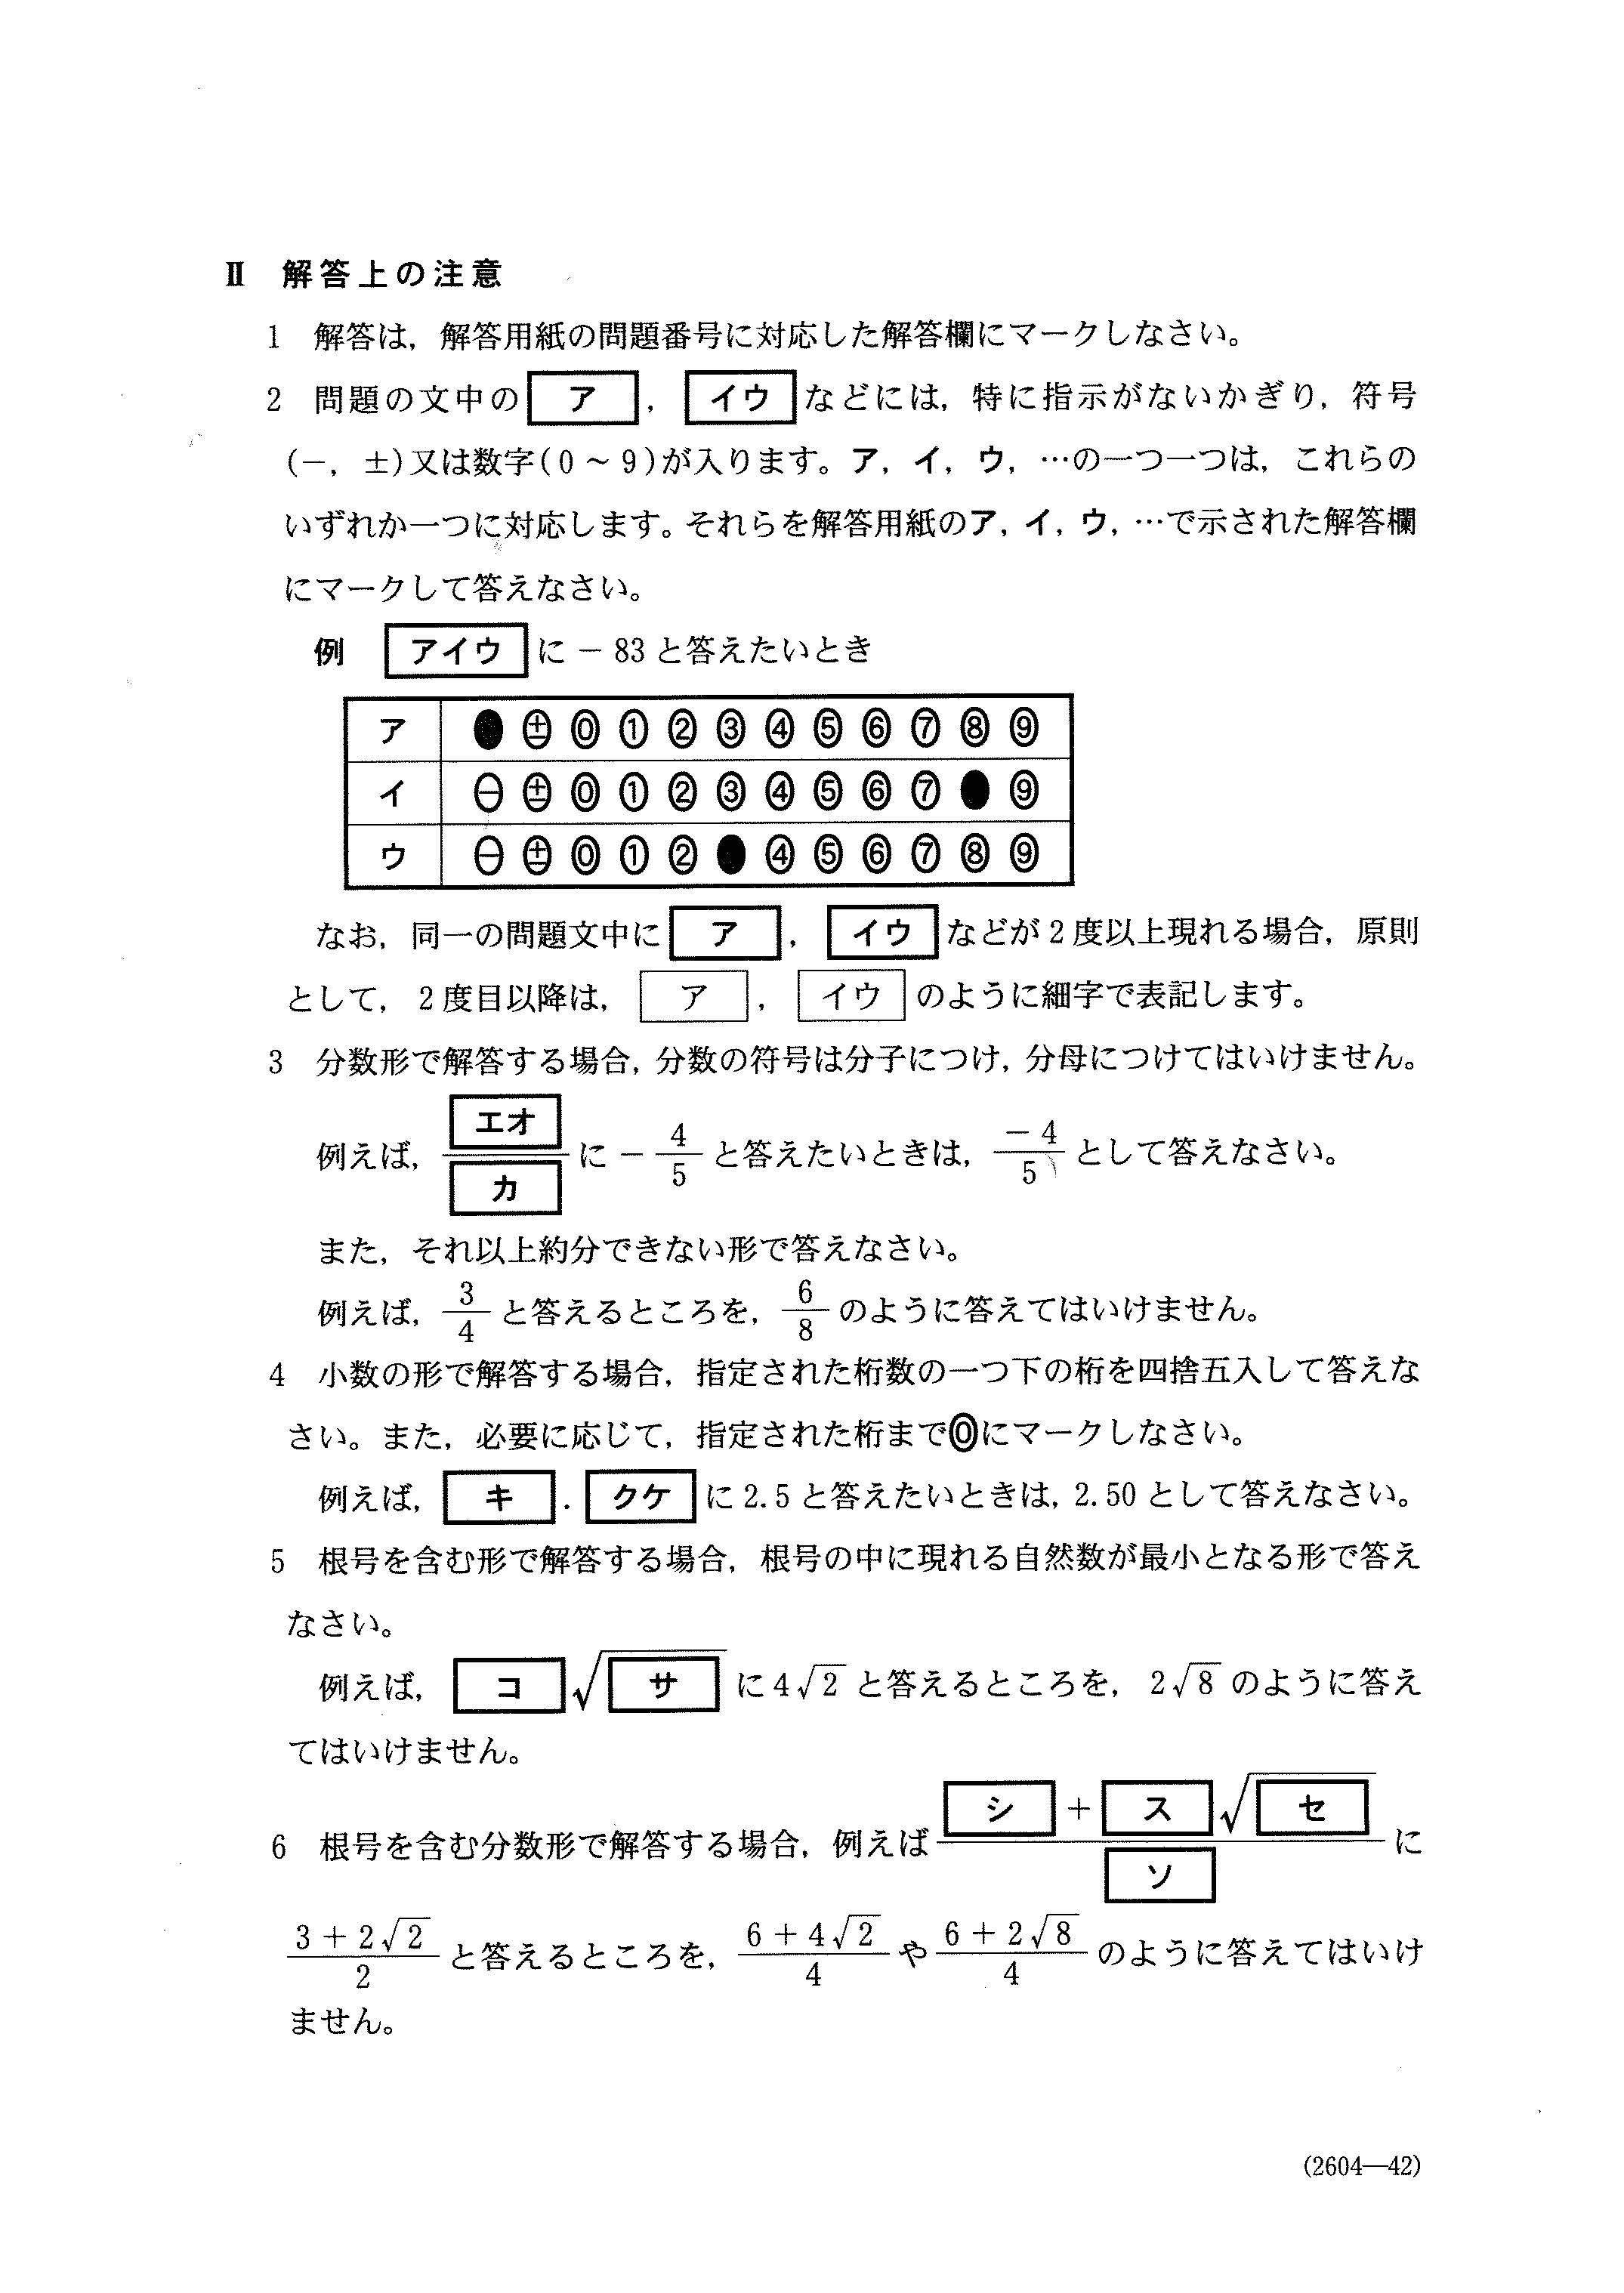 H28数学Ⅰ 大学入試センター試験過去問